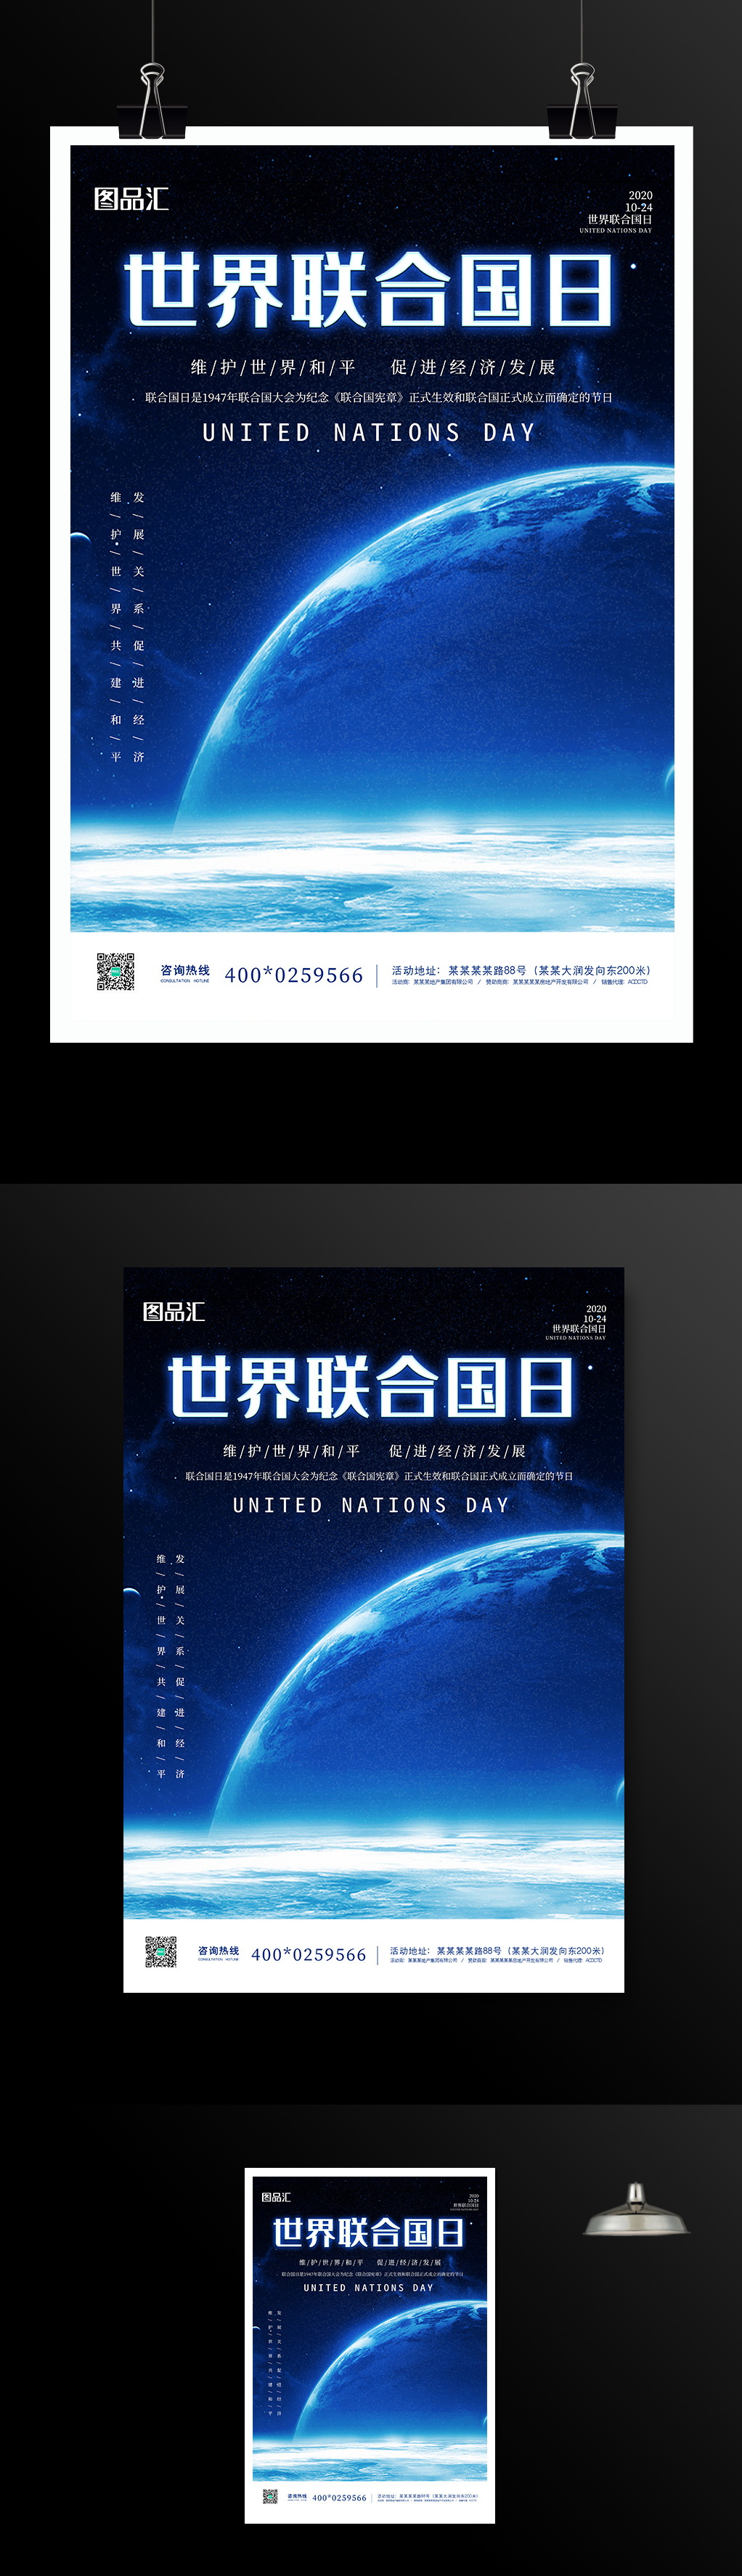 蓝色世界联合国日宣传海报